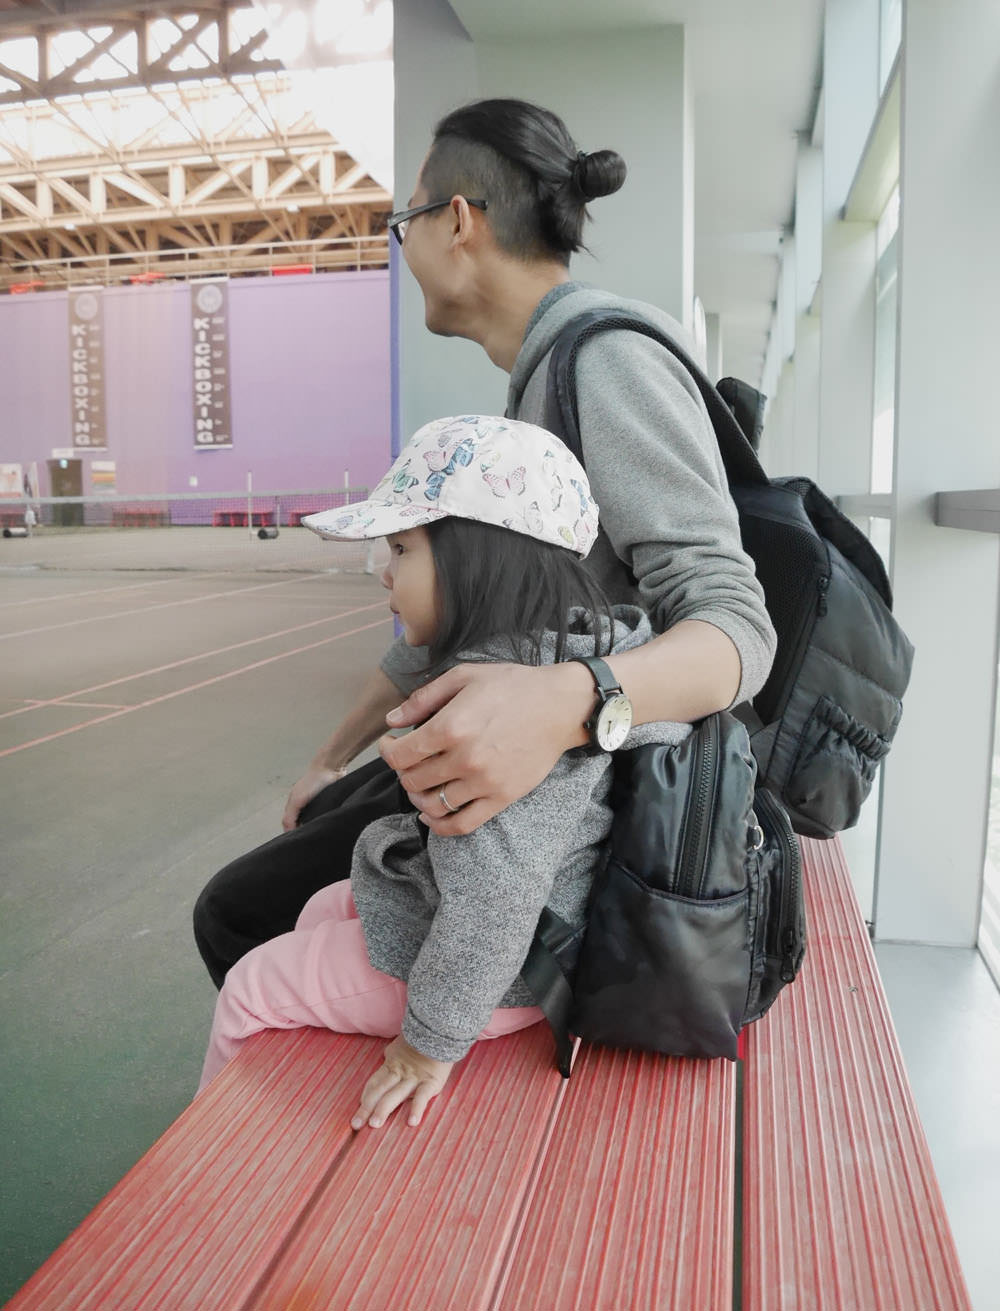 [啾團] Haruhonpo小晴天本舖媽媽們心中第一的媽媽包,結合造型與實用性的親子包